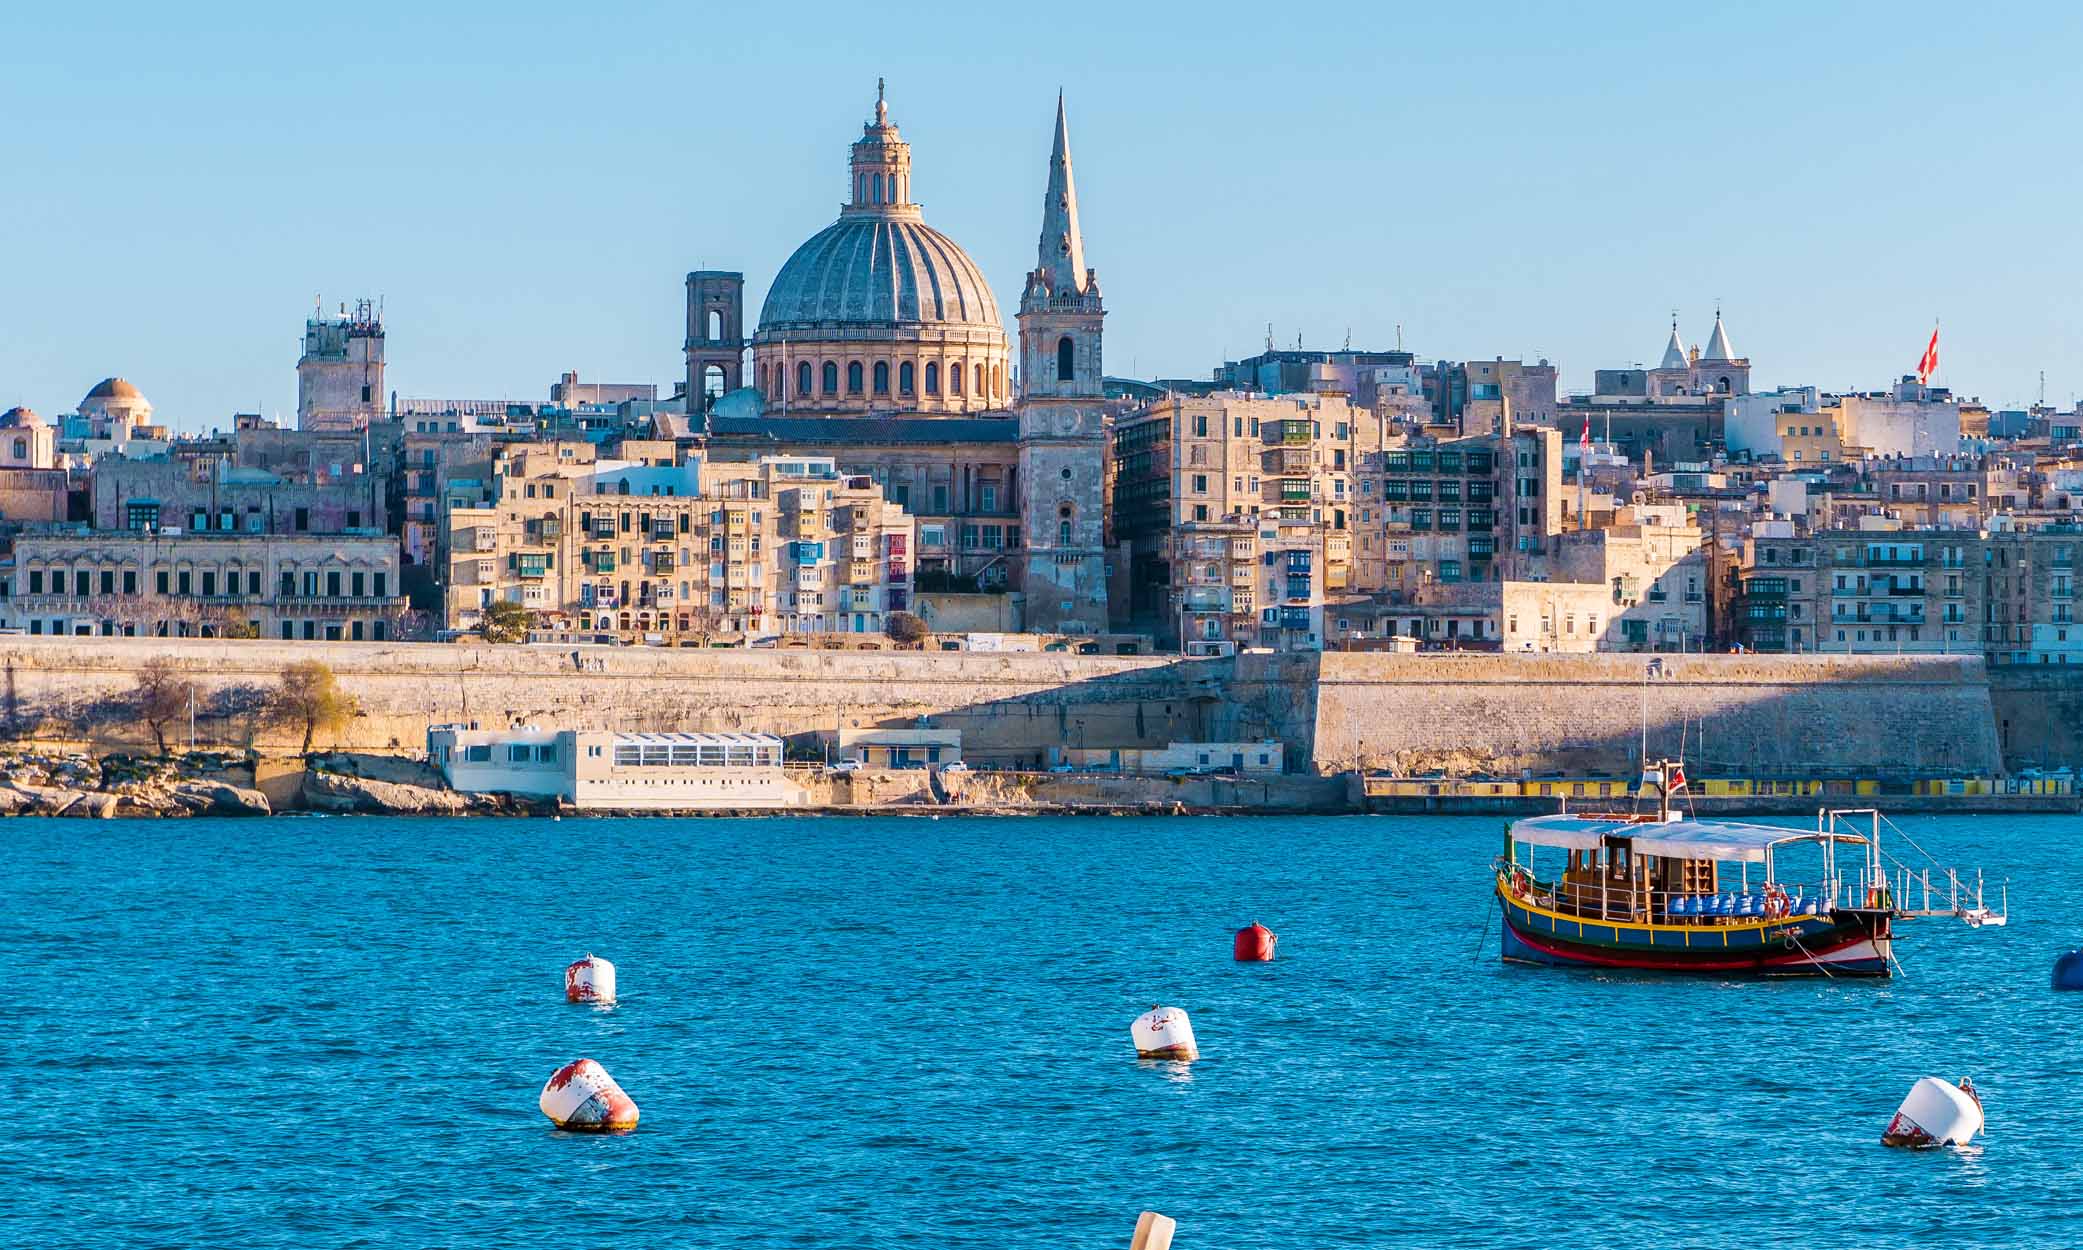 Вы имеете право на получение мальтийского паспорта в рамках натурализации исключительного инвестора Мальты.